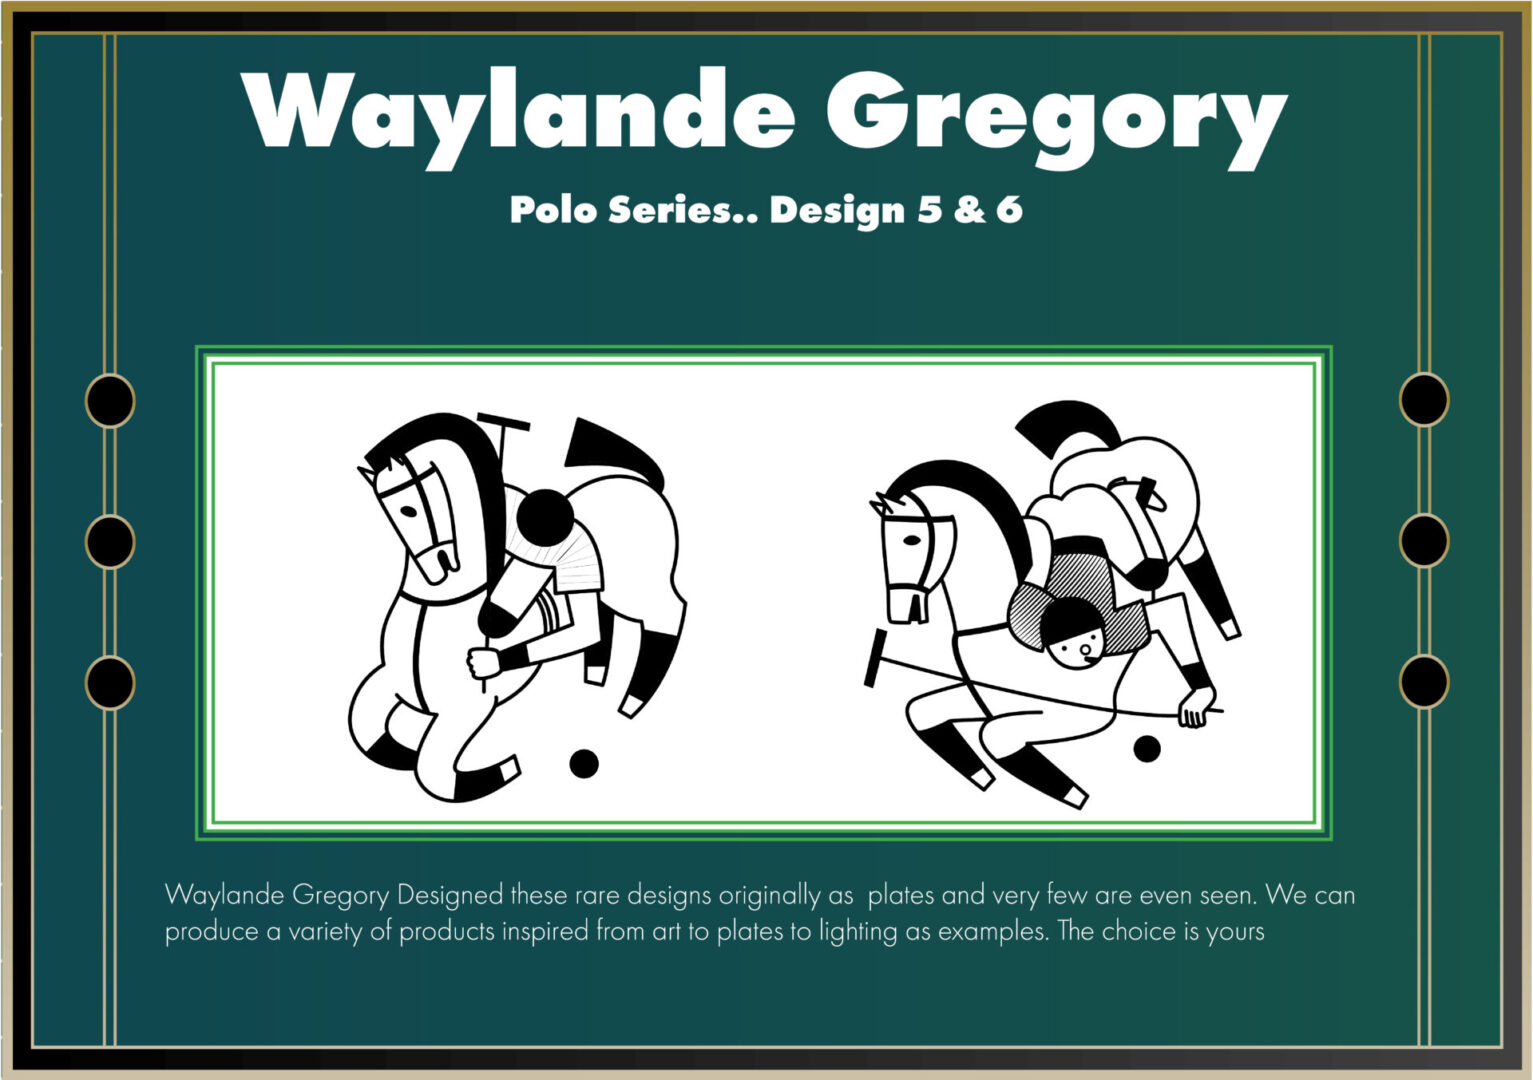 Polo Series Twin Designs by Waylande Desantis Gregory